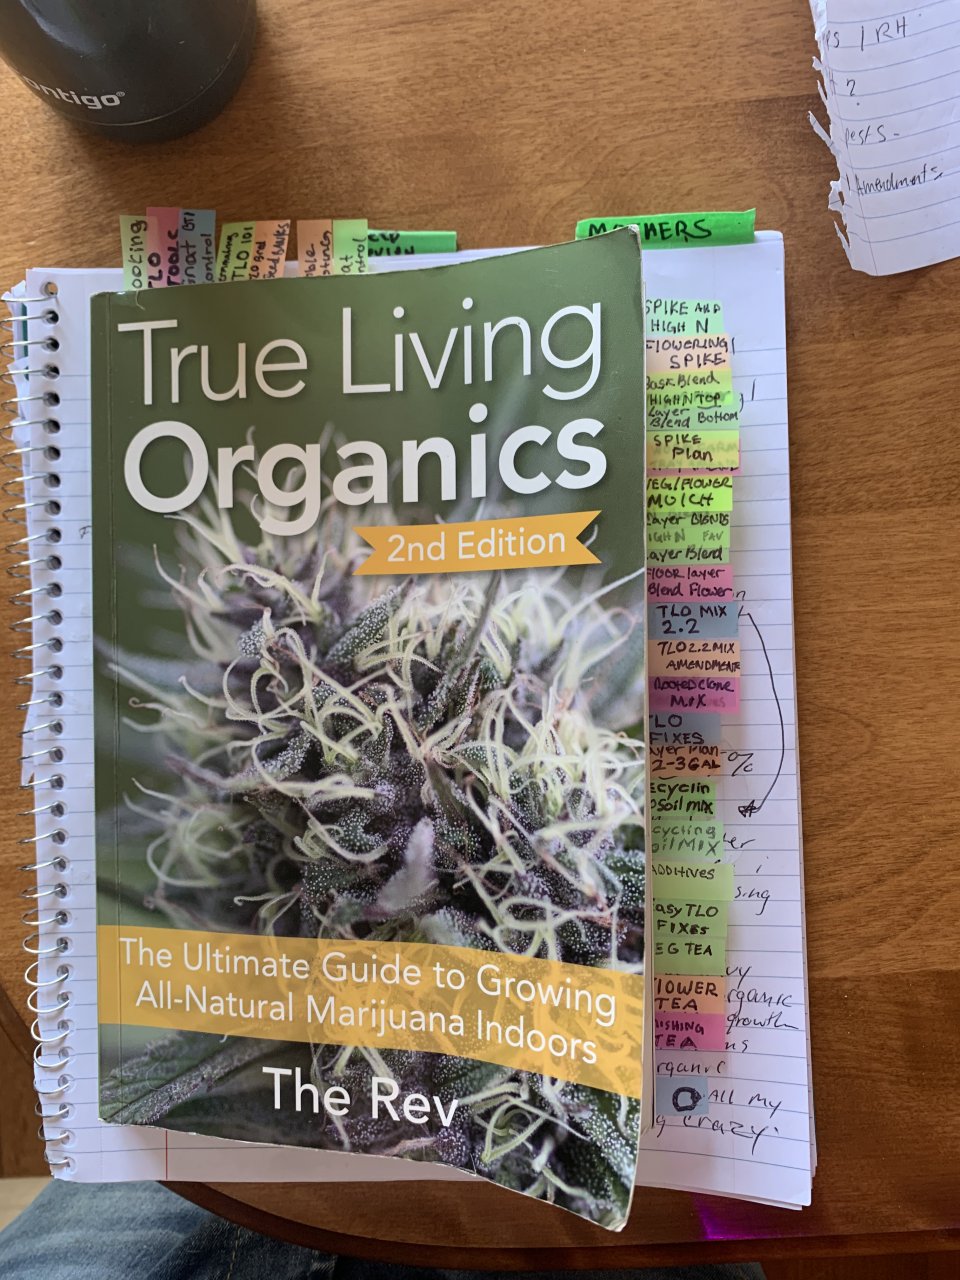 The revs true living organics